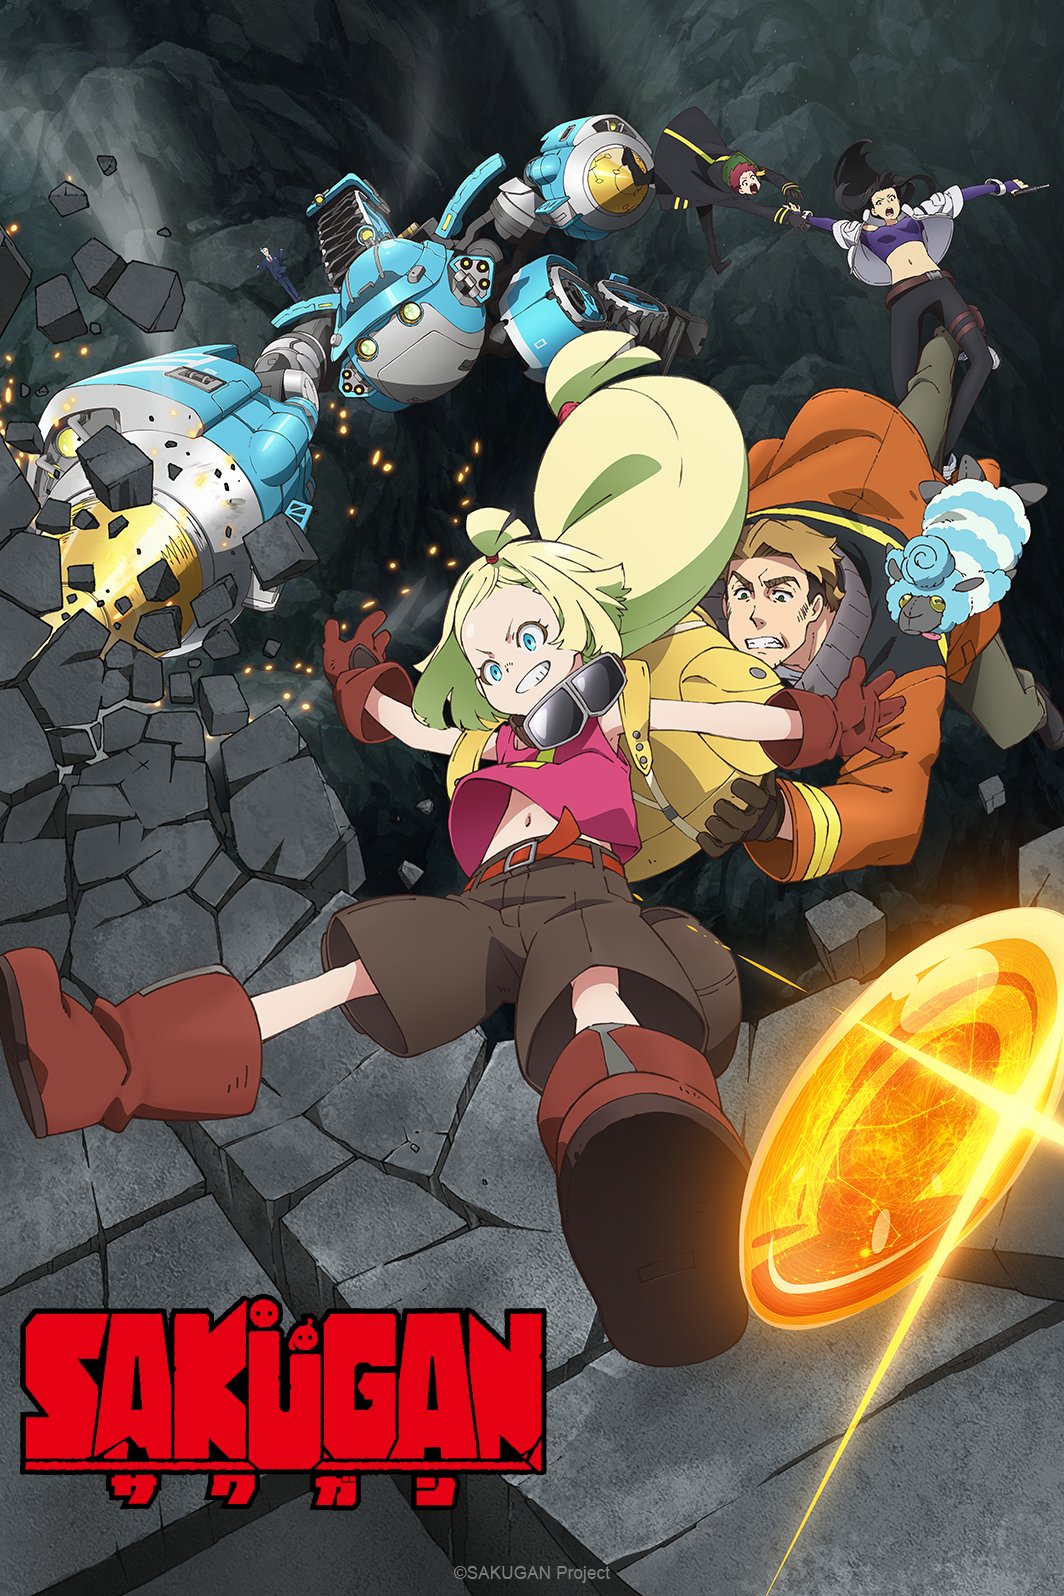 Crunchyroll anuncia dublagem brasileira para dez animes - Manga Livre RS